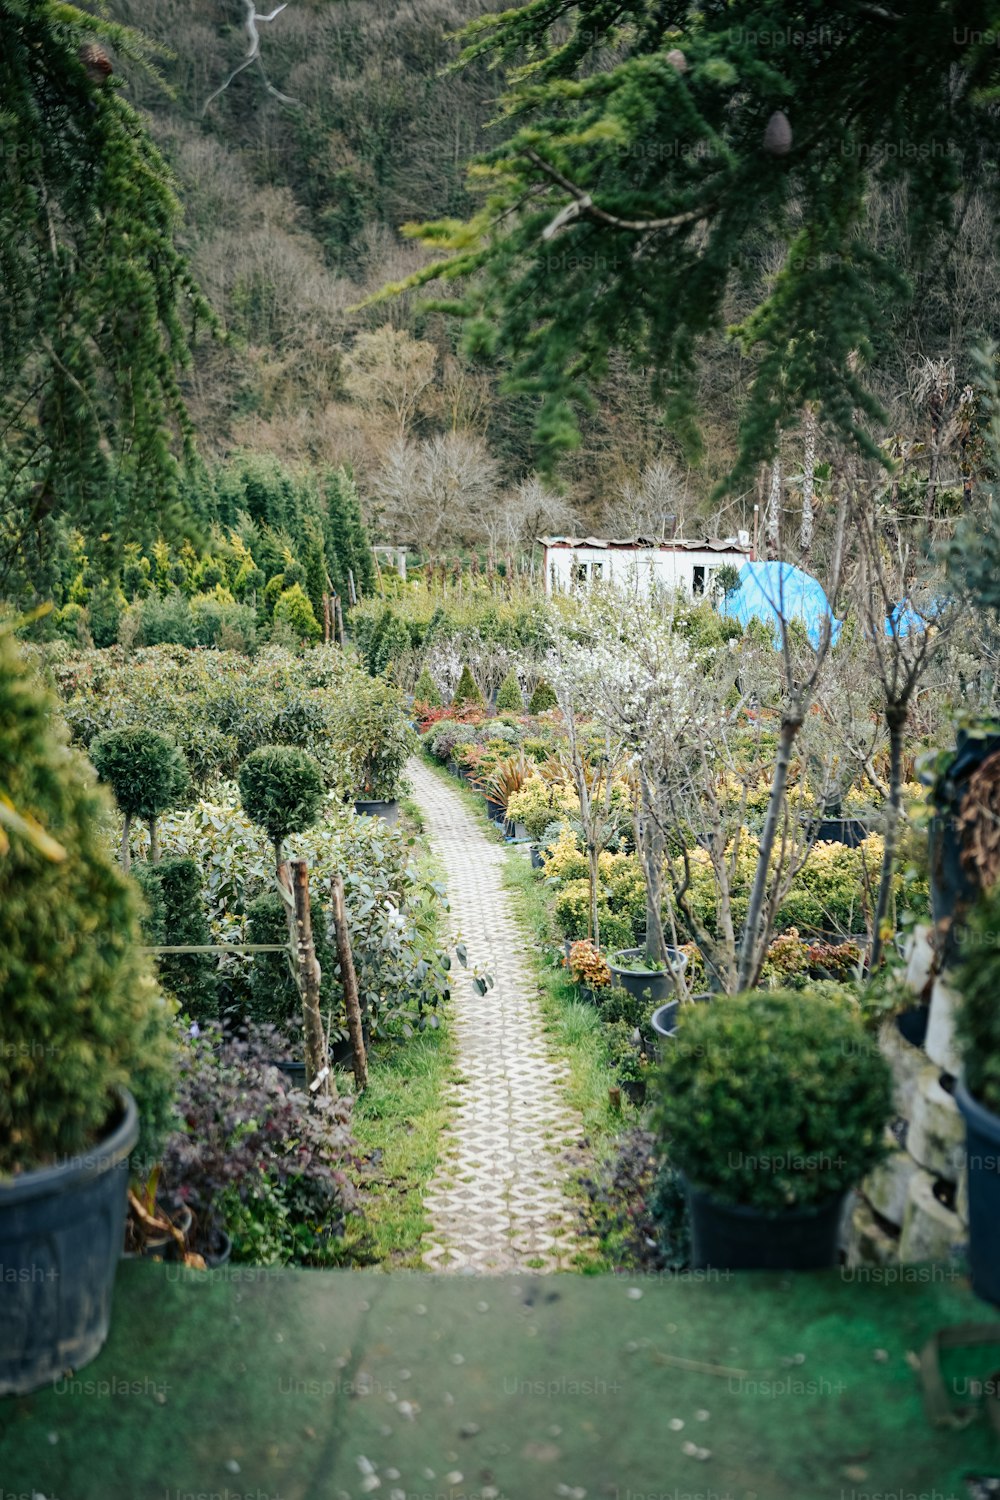 Un camino a través de un jardín lleno de muchas plantas